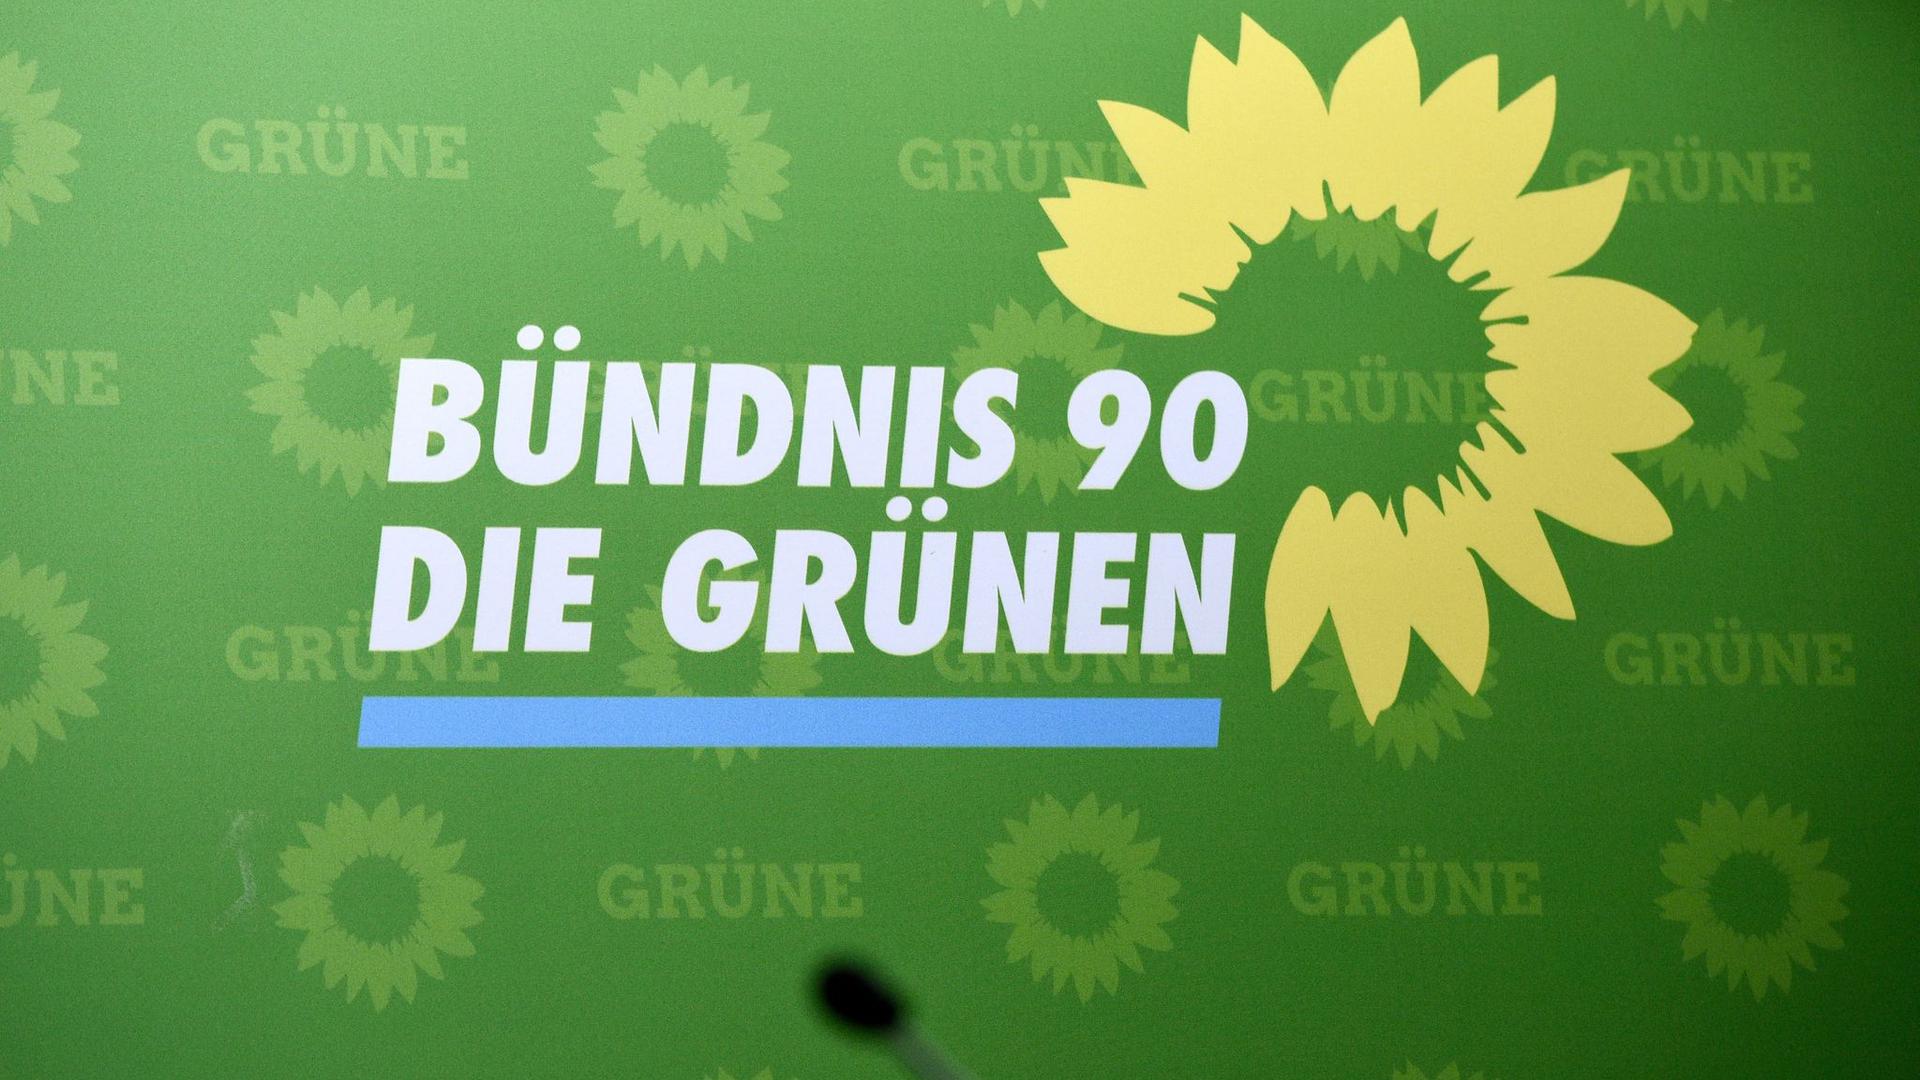 Das Logo der Partei Bündnis 90/Die Grünen.